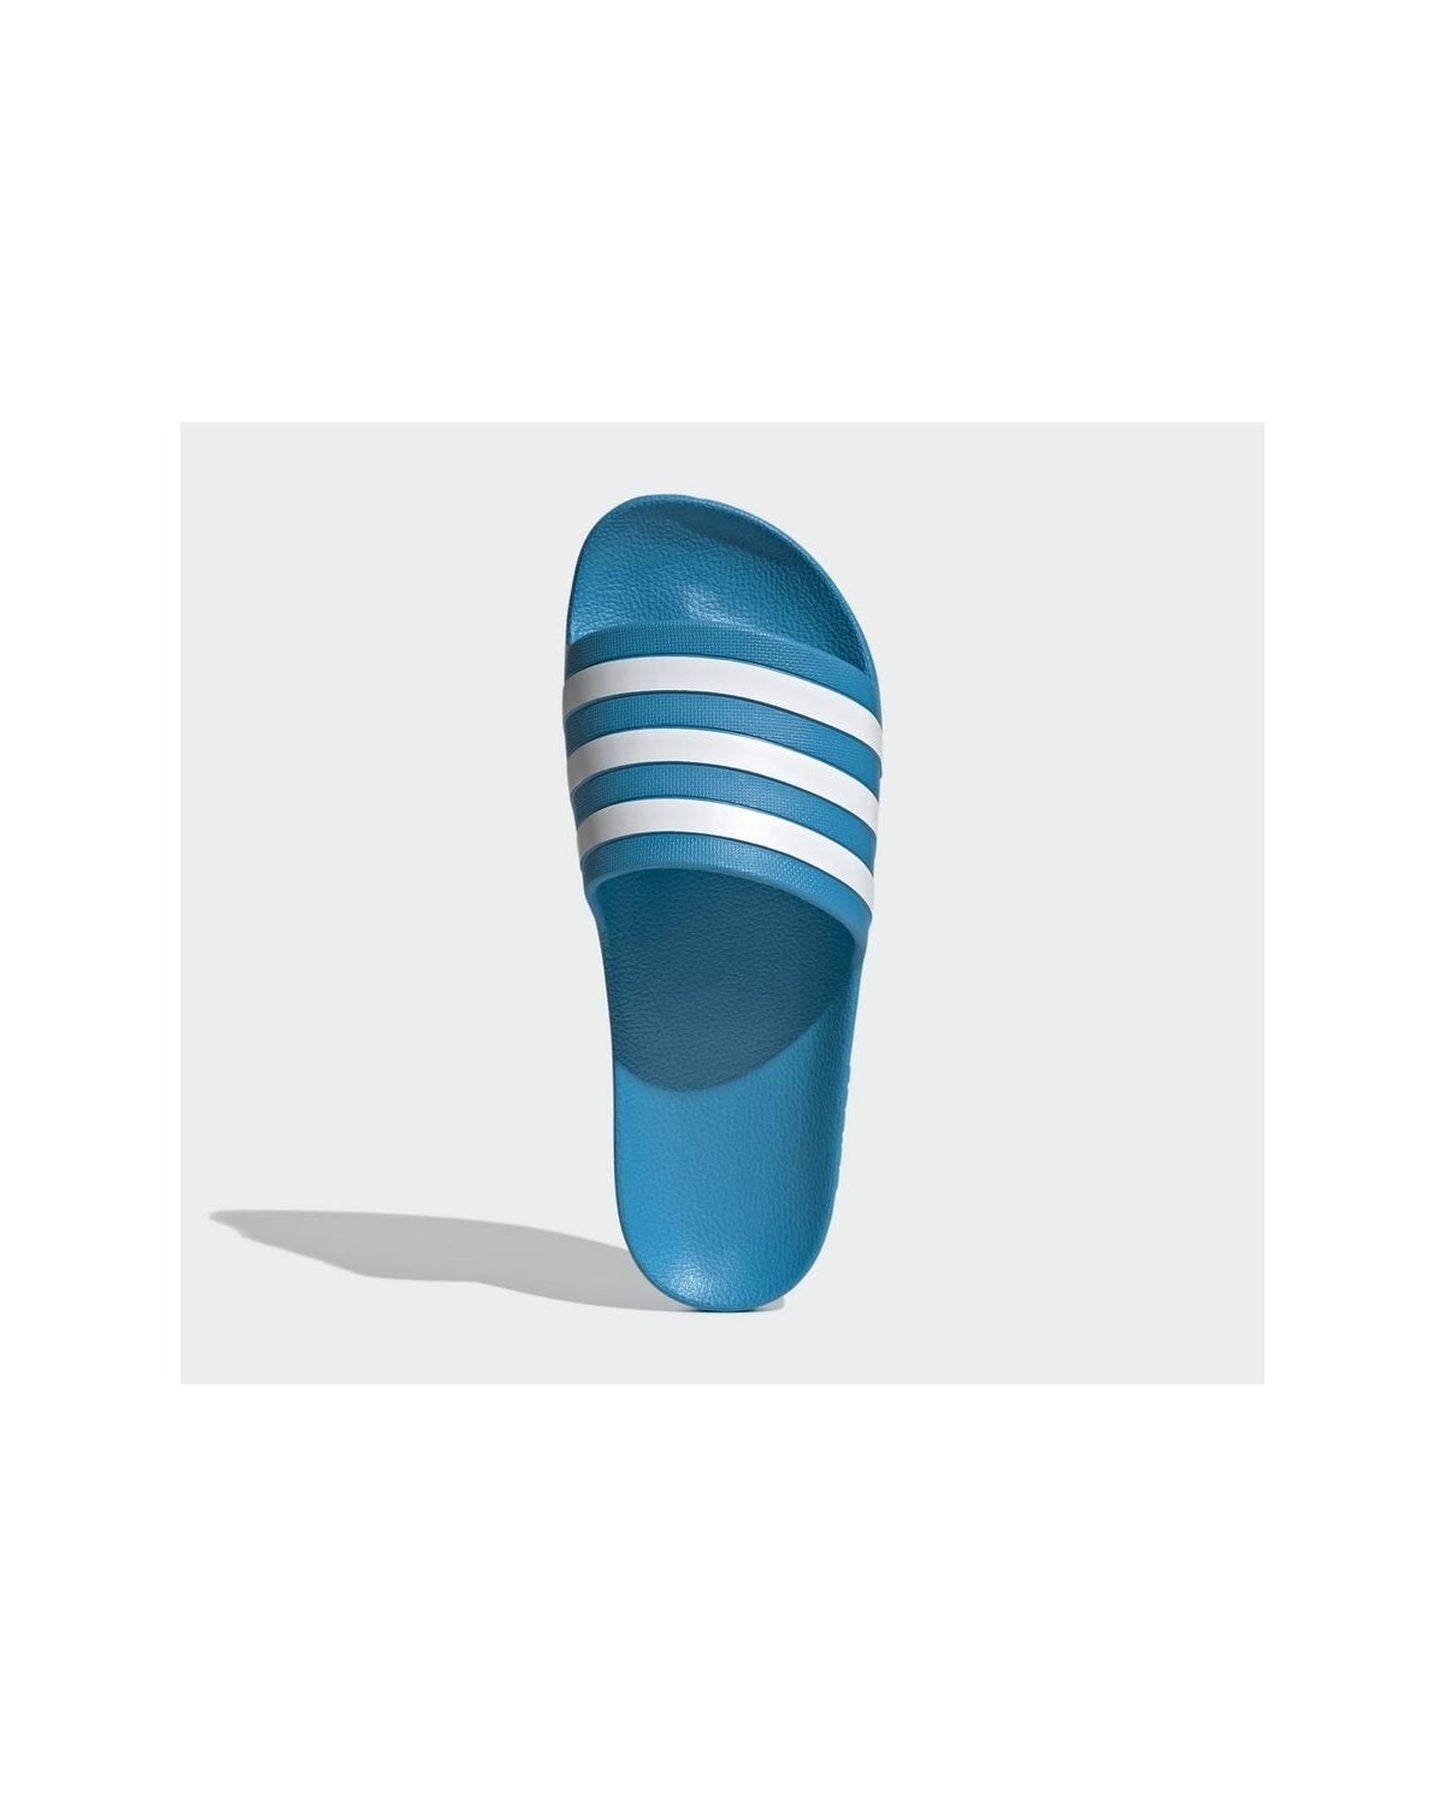 Blue/White Adidas Slides with Cloudfoam Cushioning - 5 US